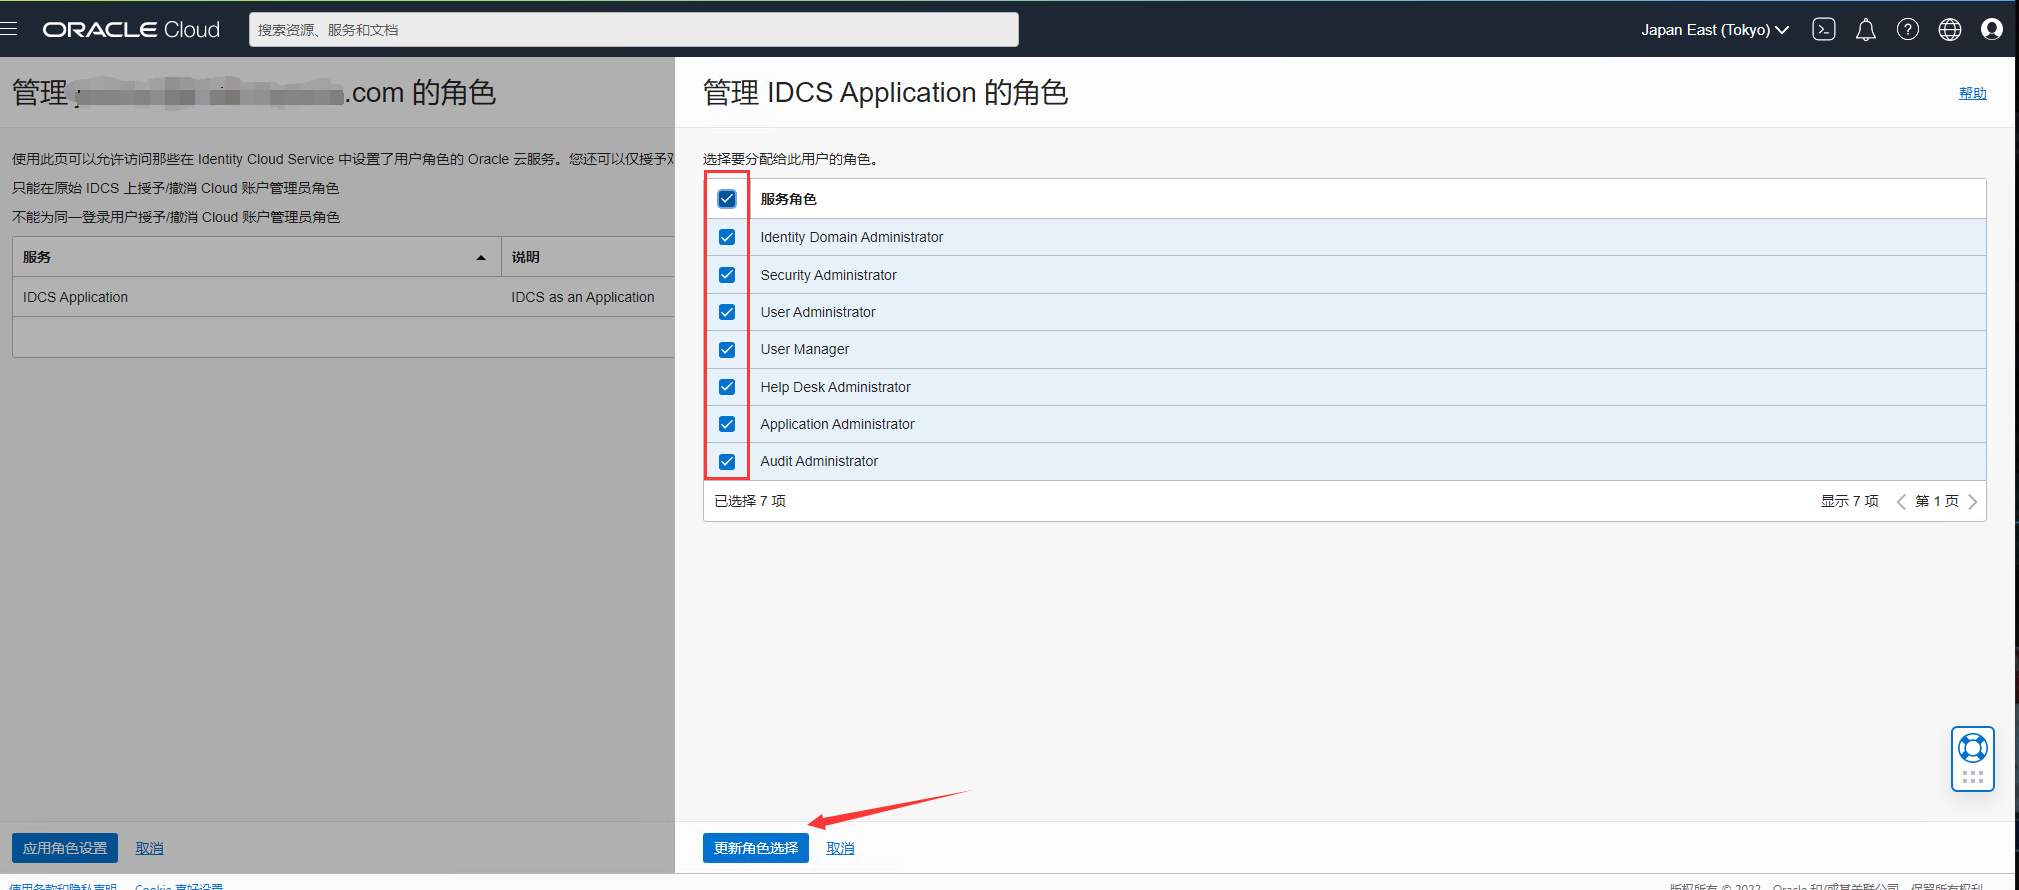 【转】甲骨文云Oracle Cloud账号更换邮箱教程（适用于旧版控制台）